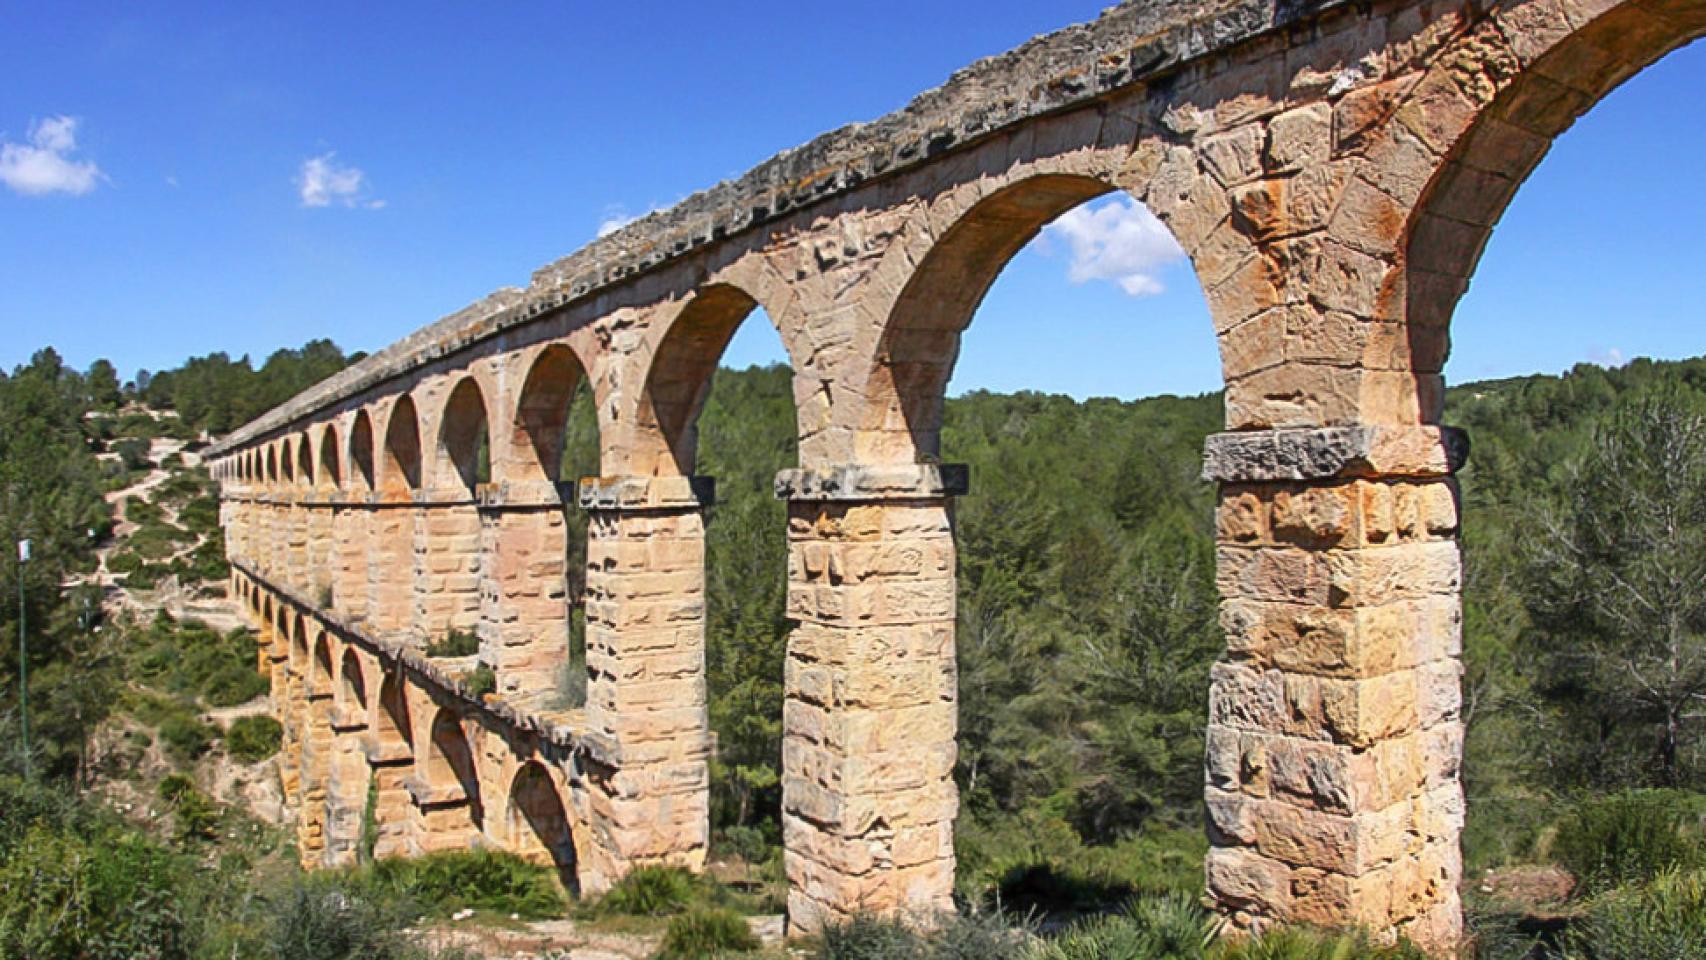 Acueducto romano de Tarraco, conocido como el puente del Diablo